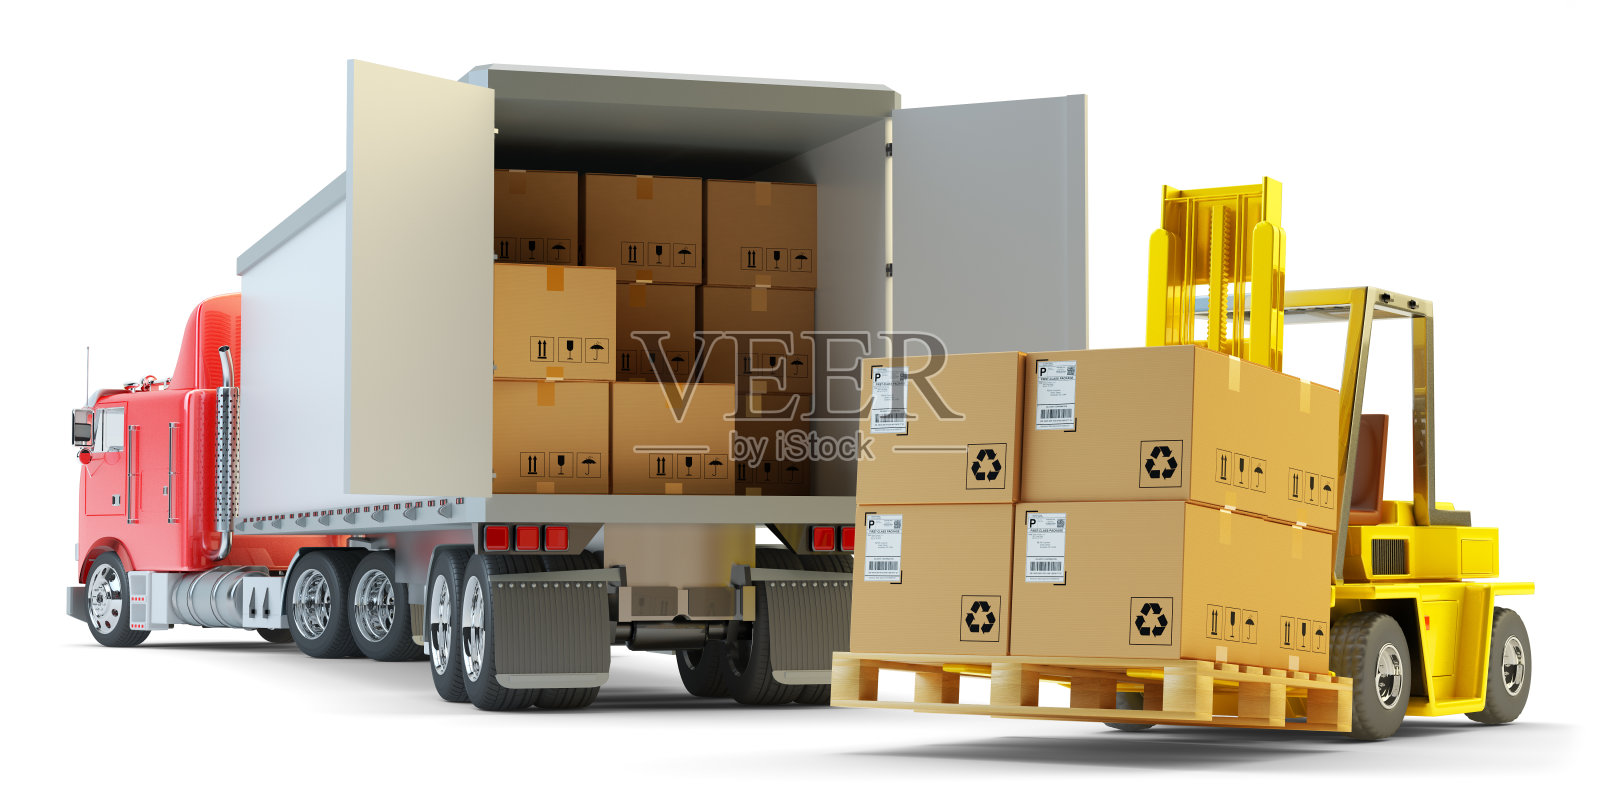 货物运输、包装运输和仓储物流理念照片摄影图片